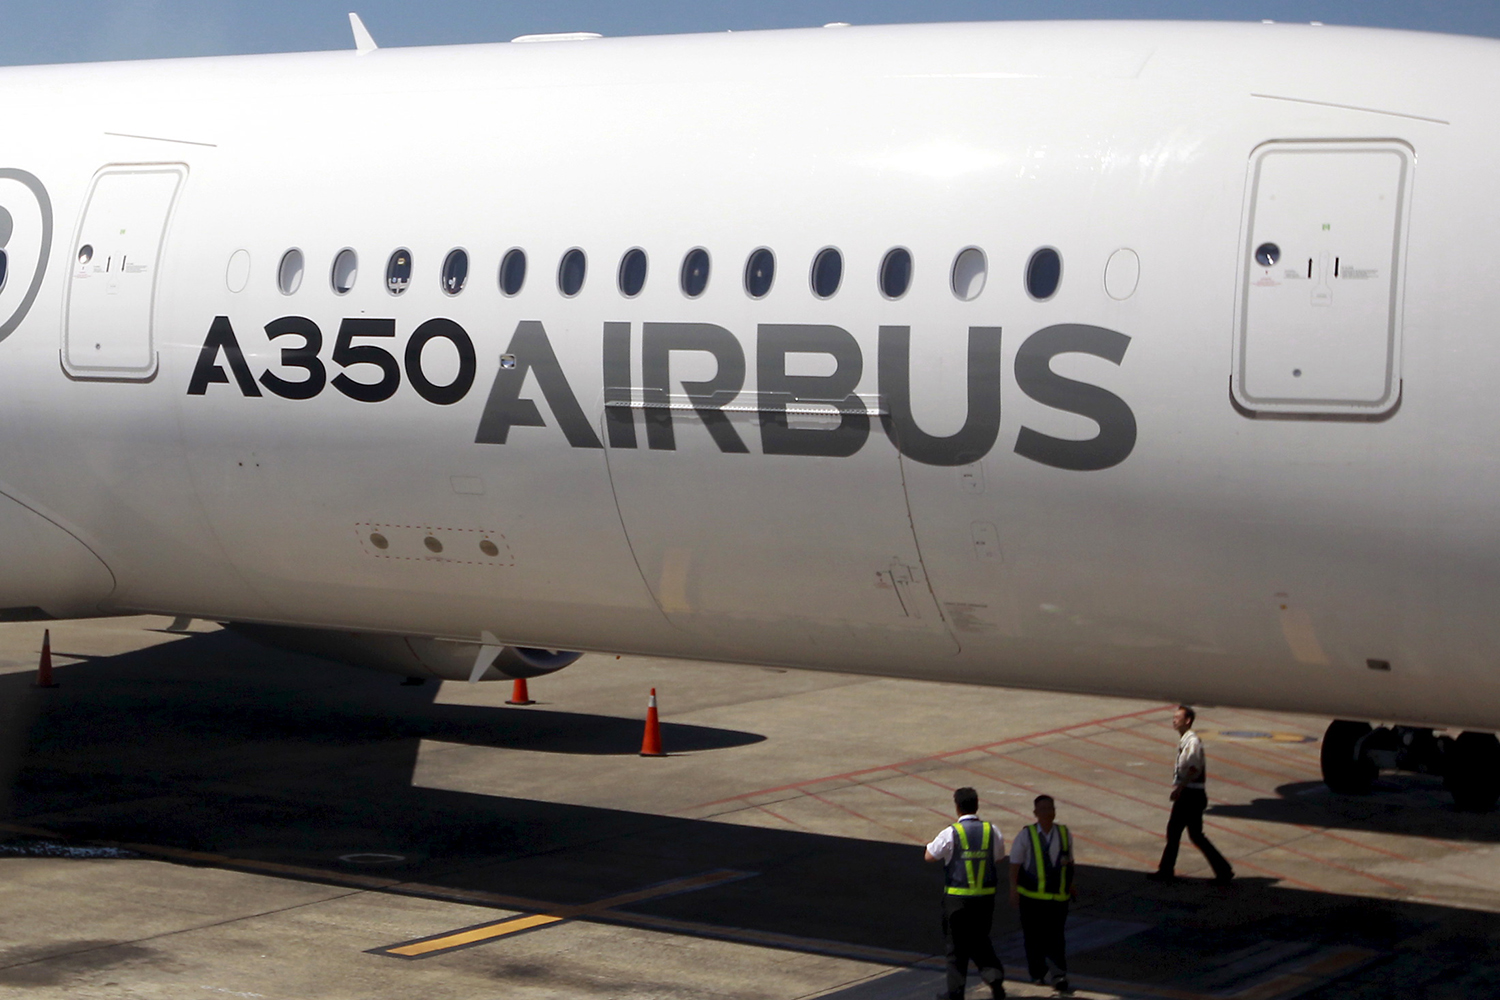 Airbus amenaza con reducir sus inversiones en Reino Unido si este abandona la UE